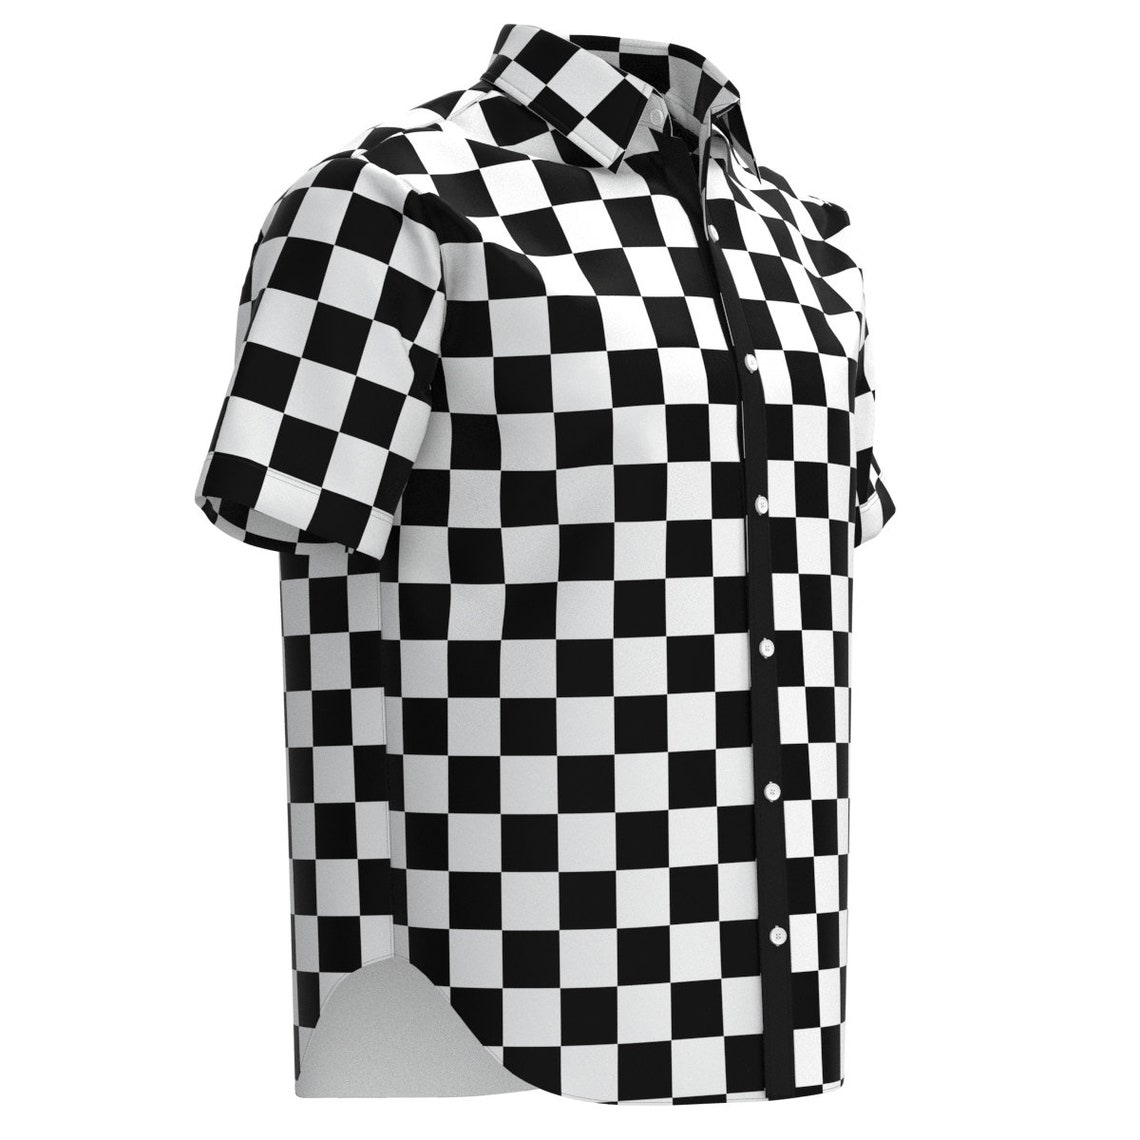 Black & White Checkered Box Check Pattern Men's Button - Etsy